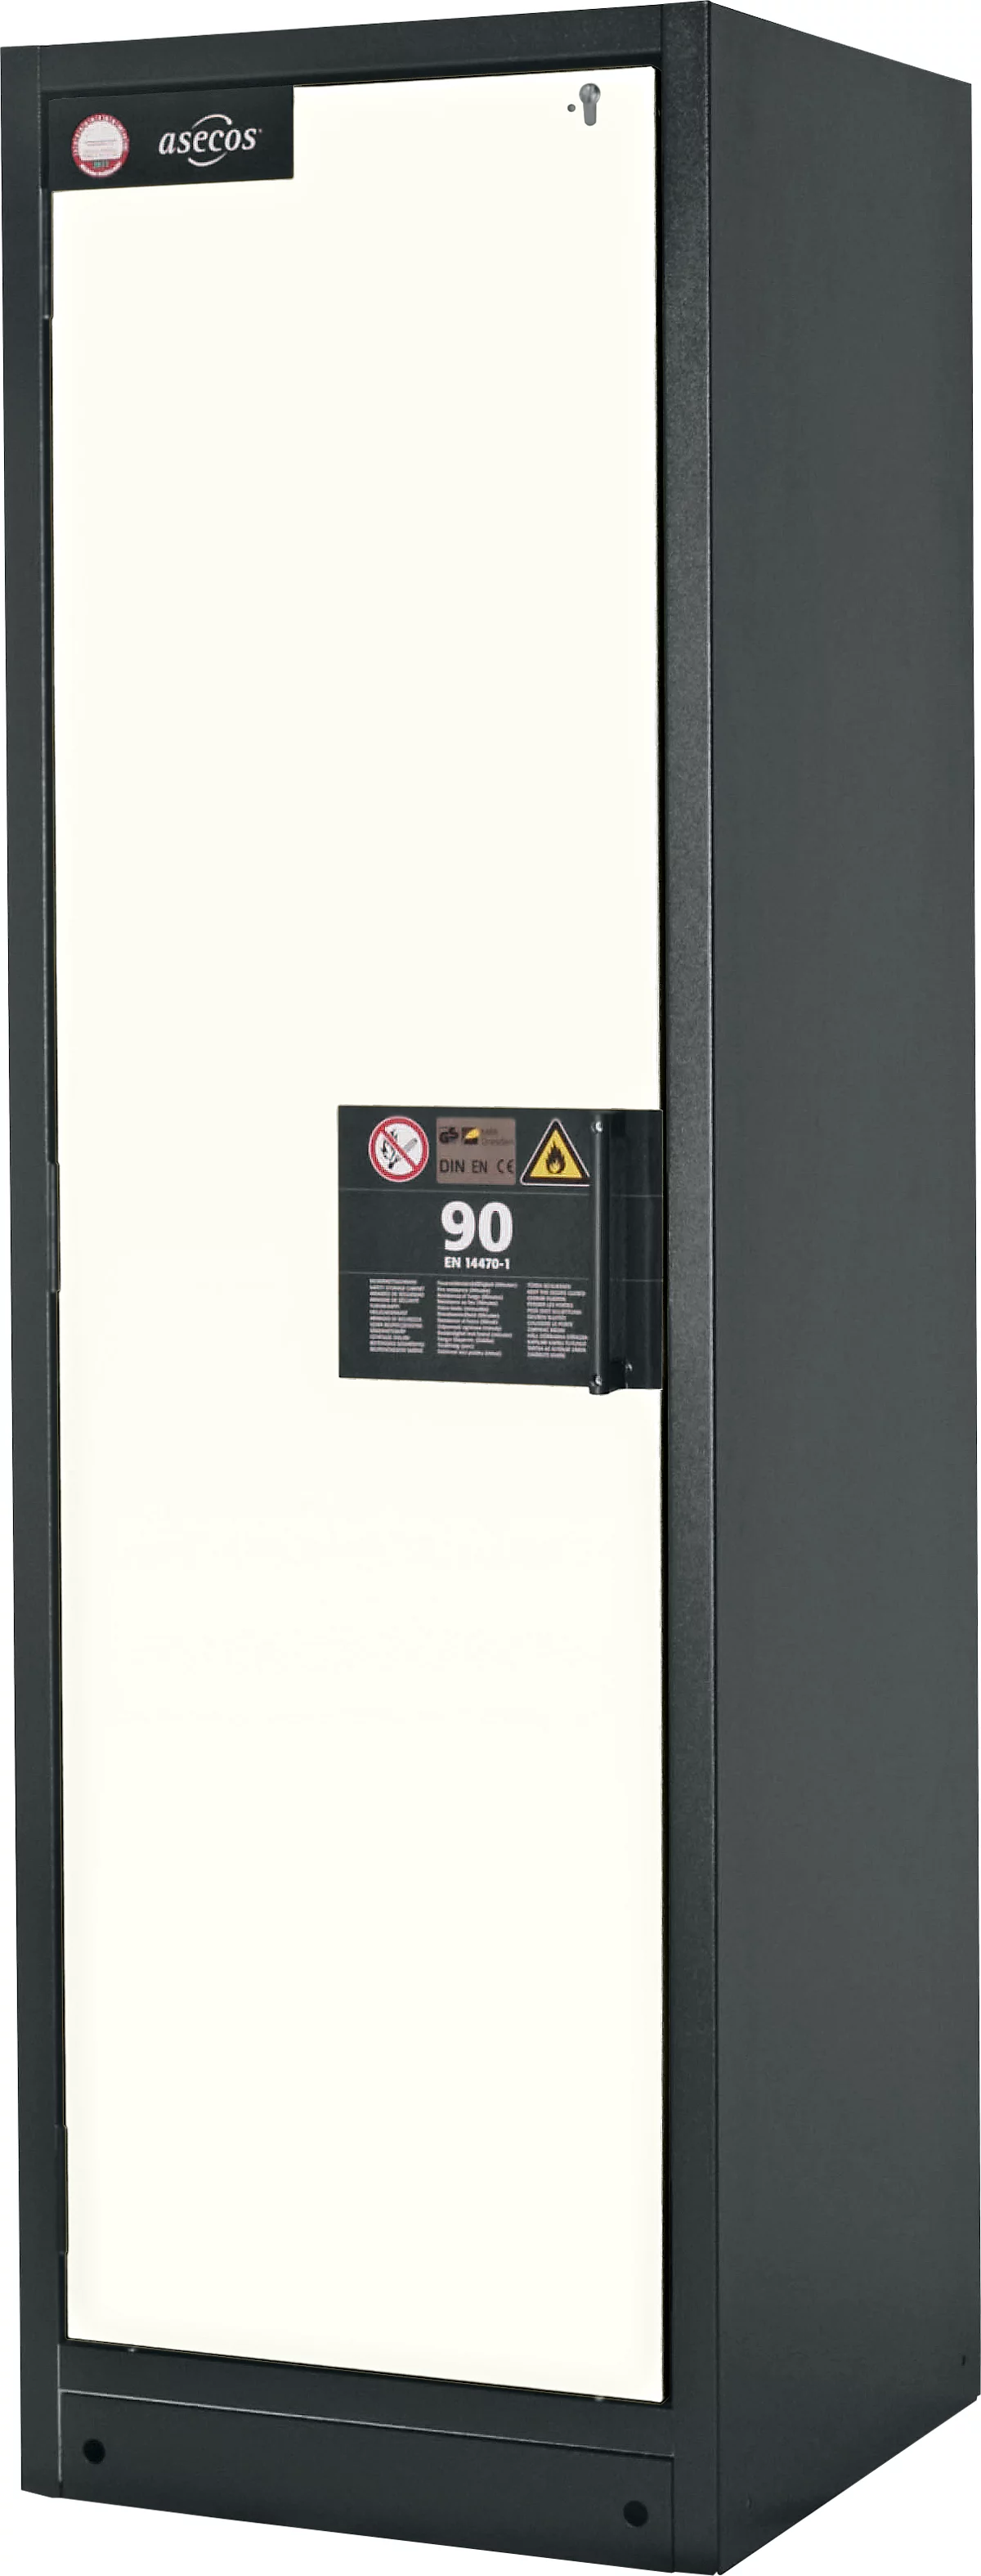 Sicherheitsschrank Typ 90 Asecos Q-CLASSIC-90 asecos, B 600 mm, Tür links, 3 Böden, reinweiß